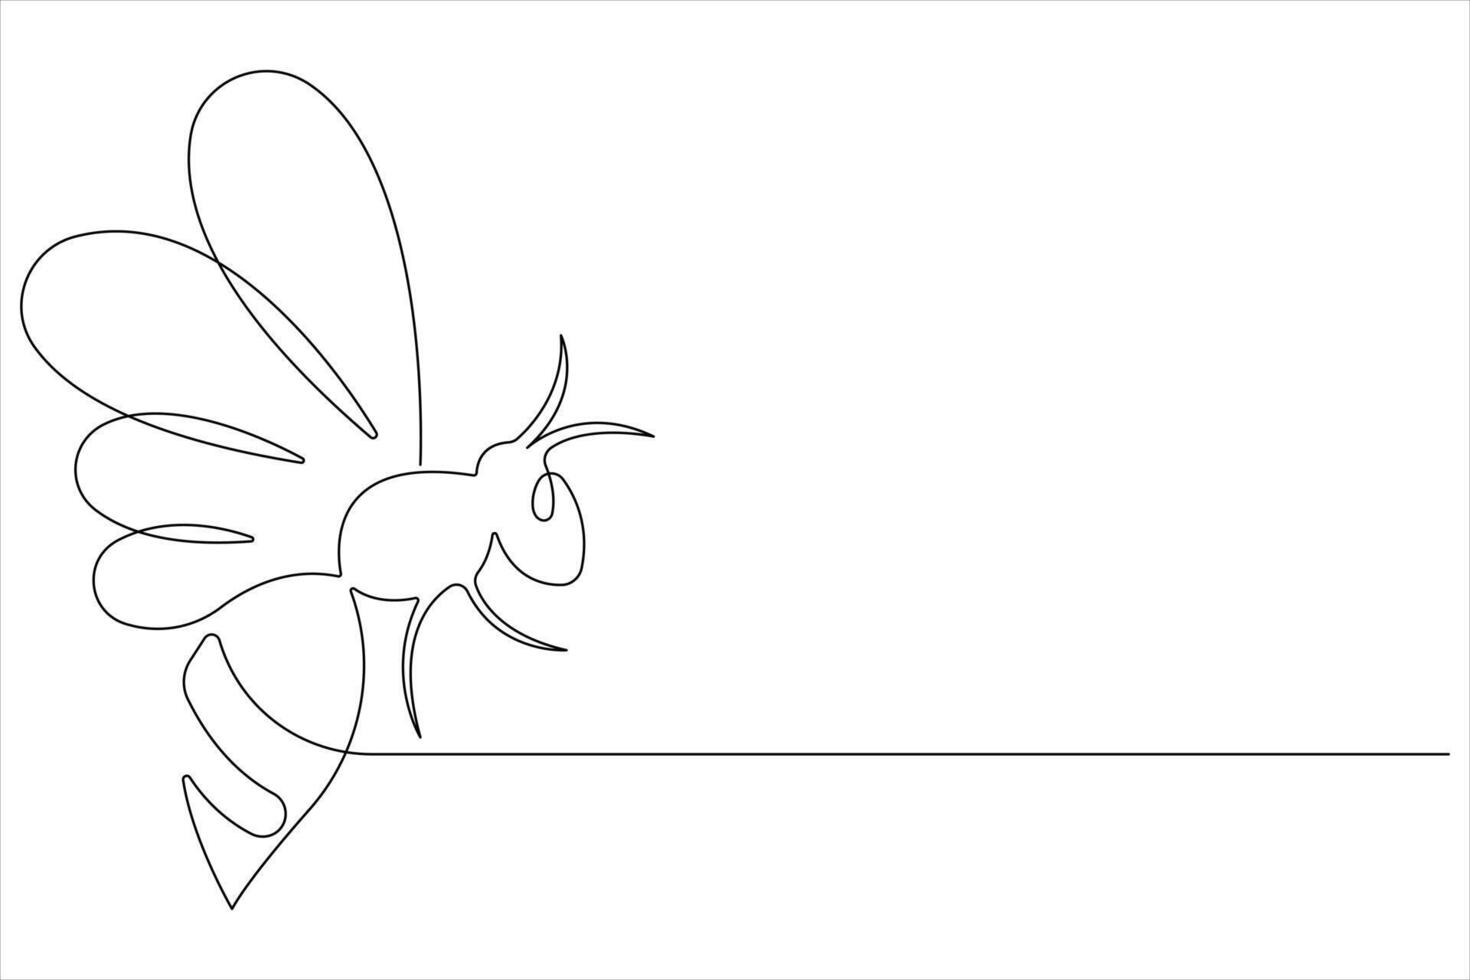 simples ilustração do querida abelha forma contínuo 1 linha arte abelha esboço vetor